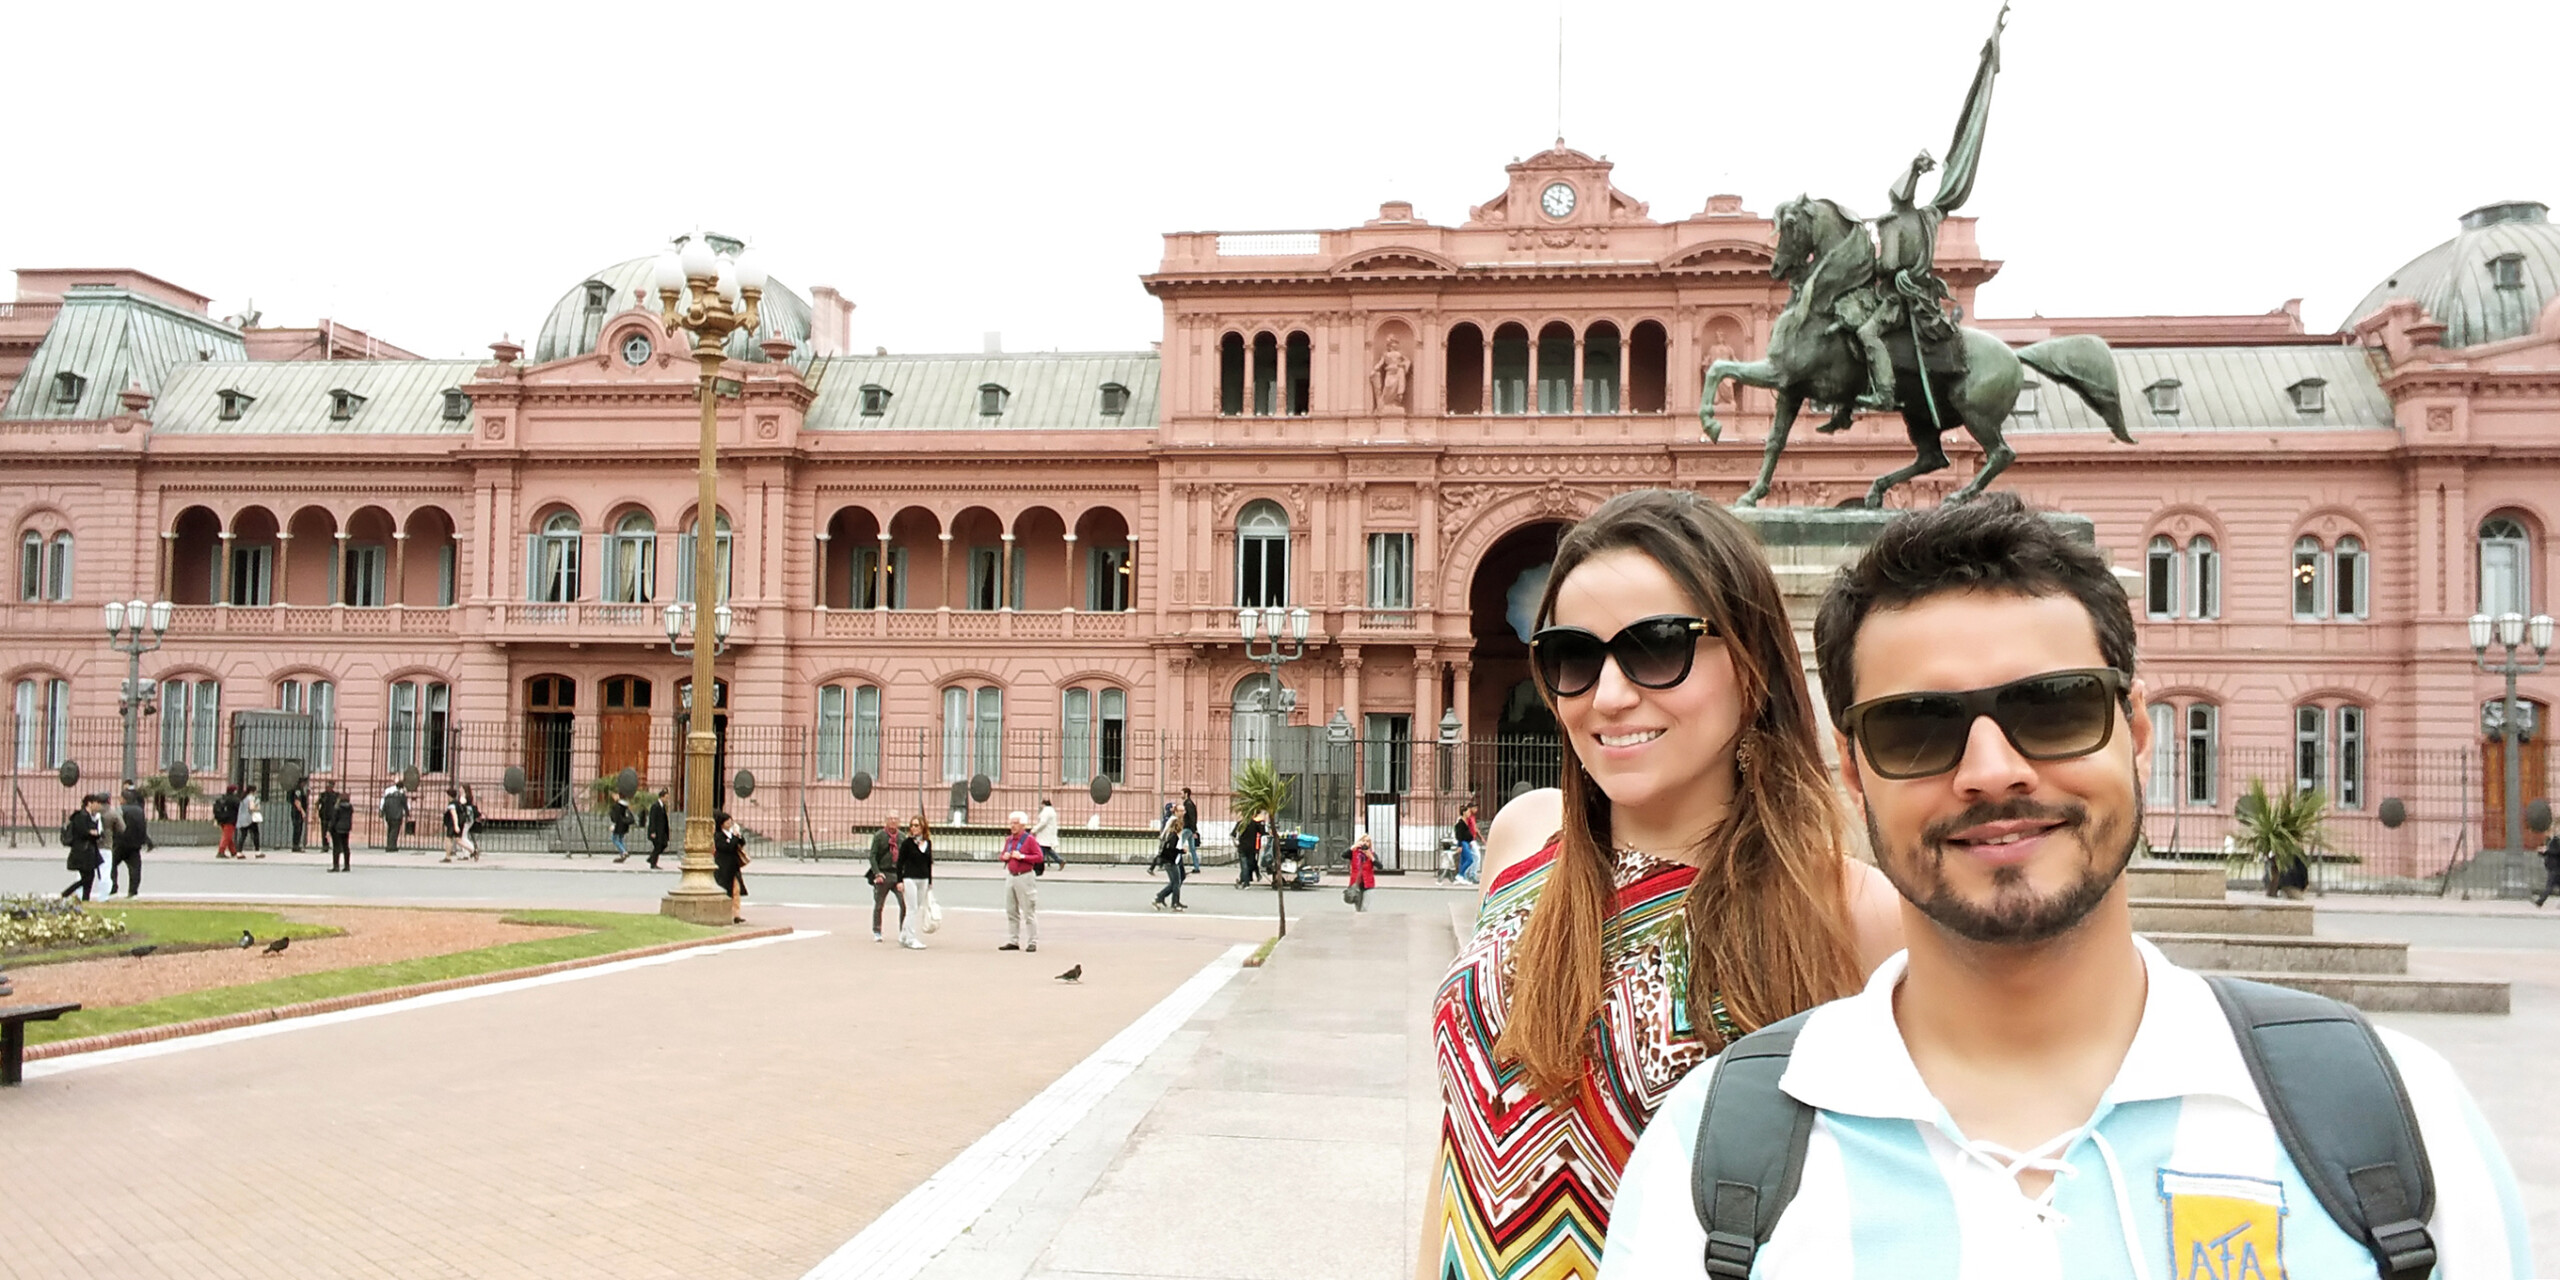 Sede do governo argentino, a Casa Rosada é o principal cartão postal de Buenos Aires